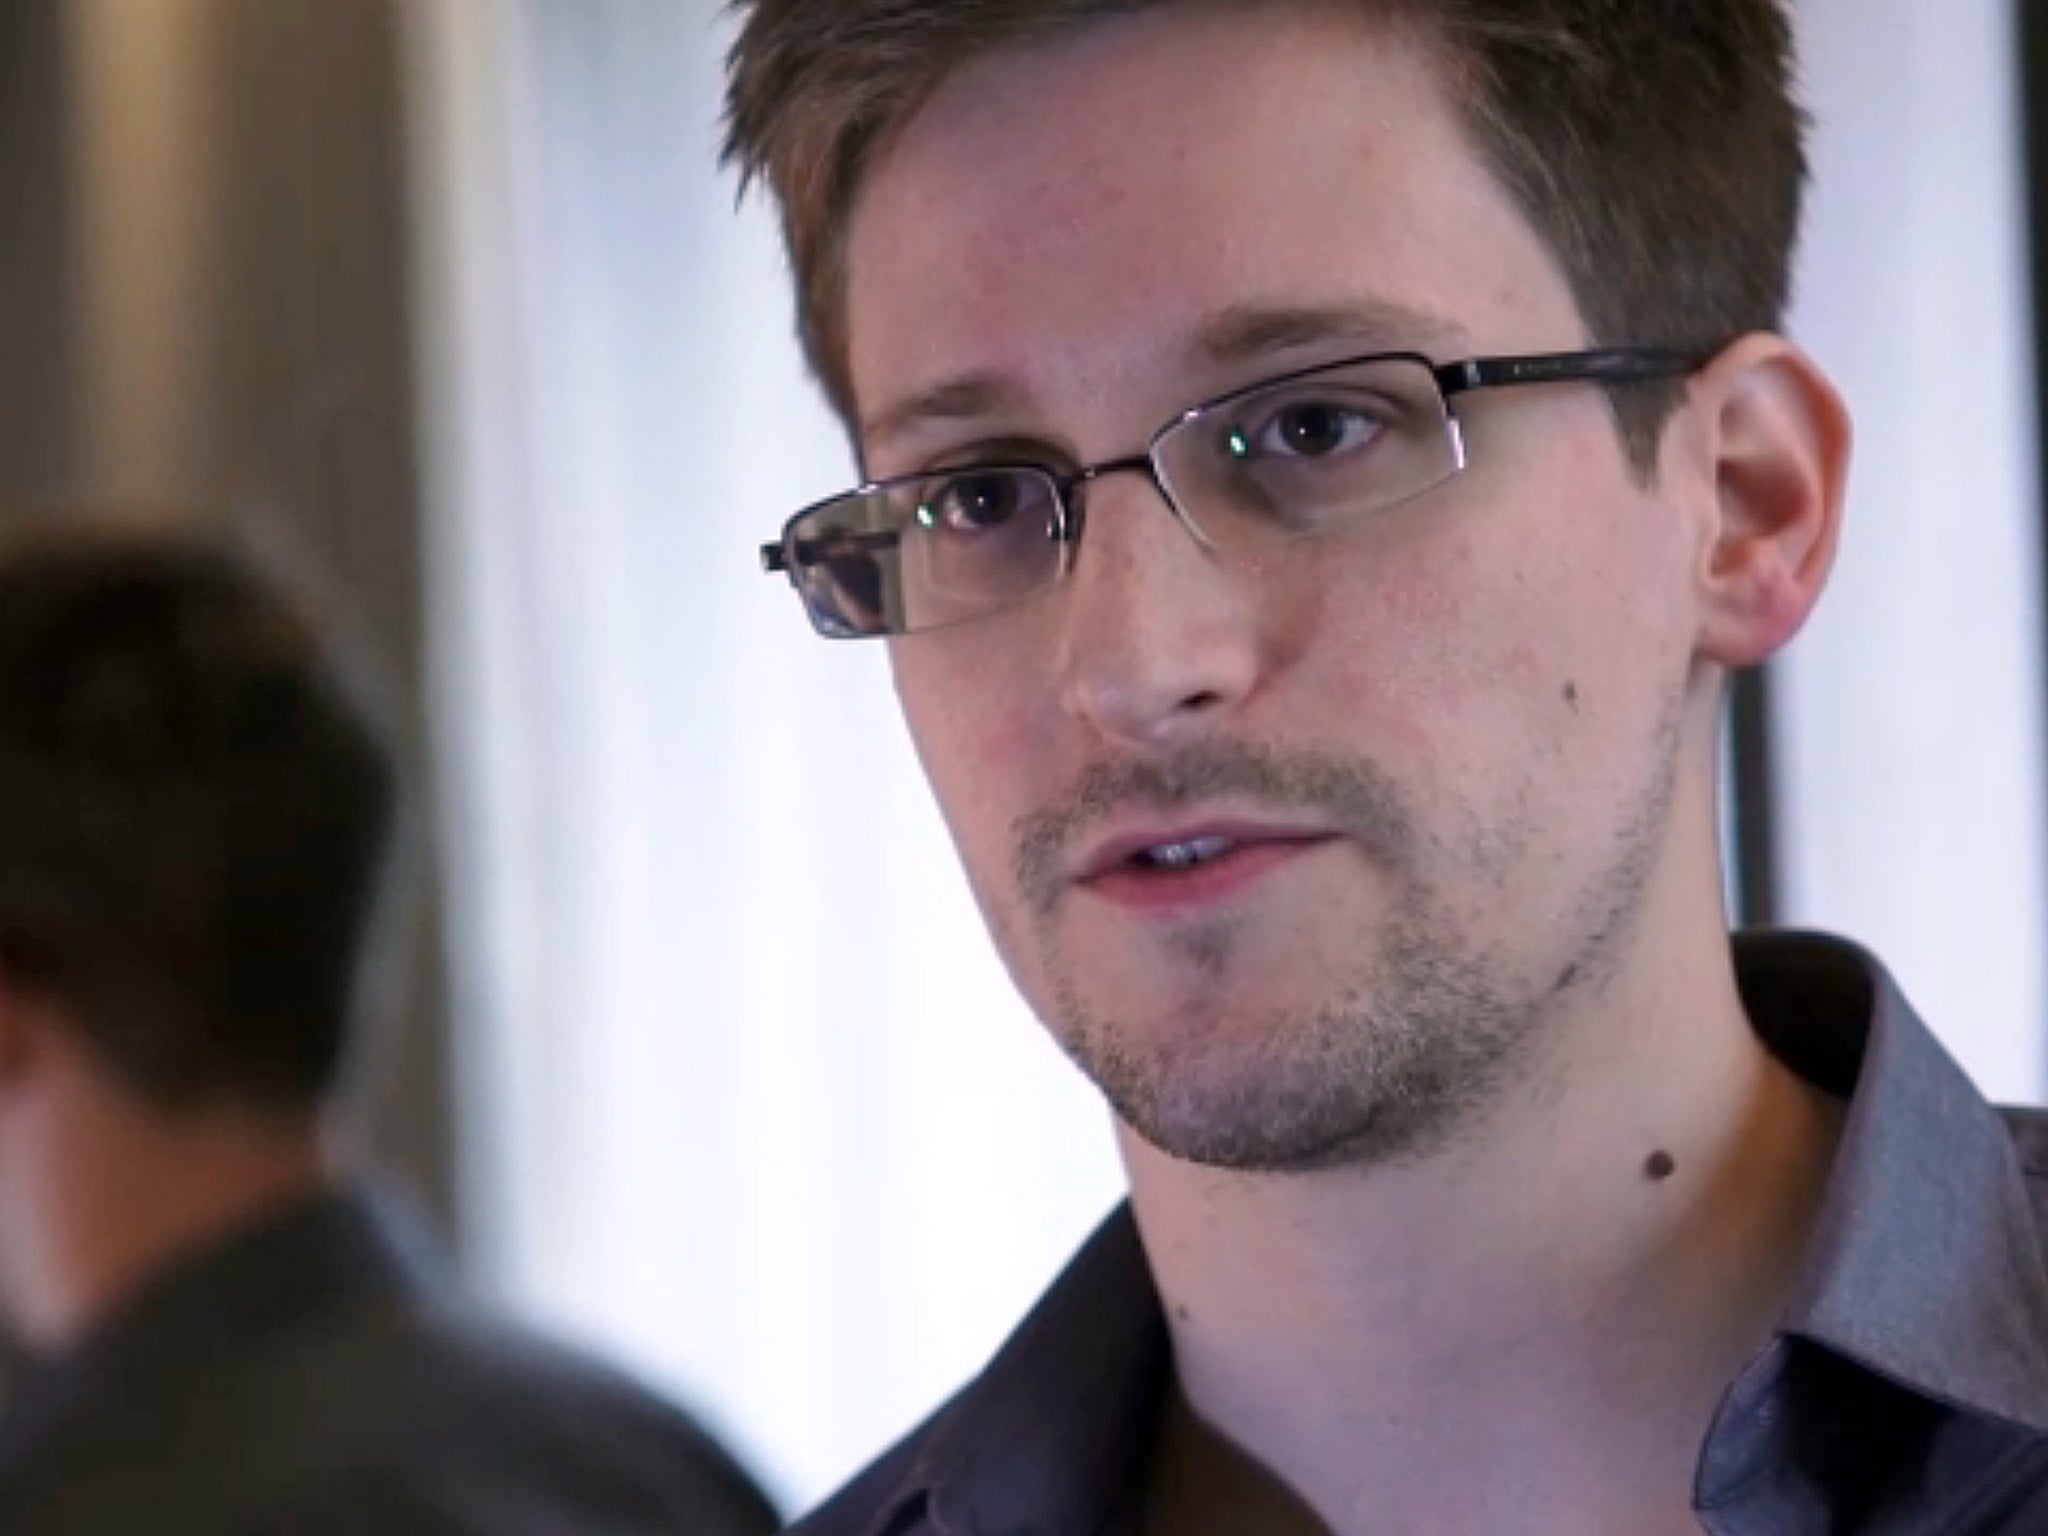 The Snowden leaks revealed secret surveillance programmes